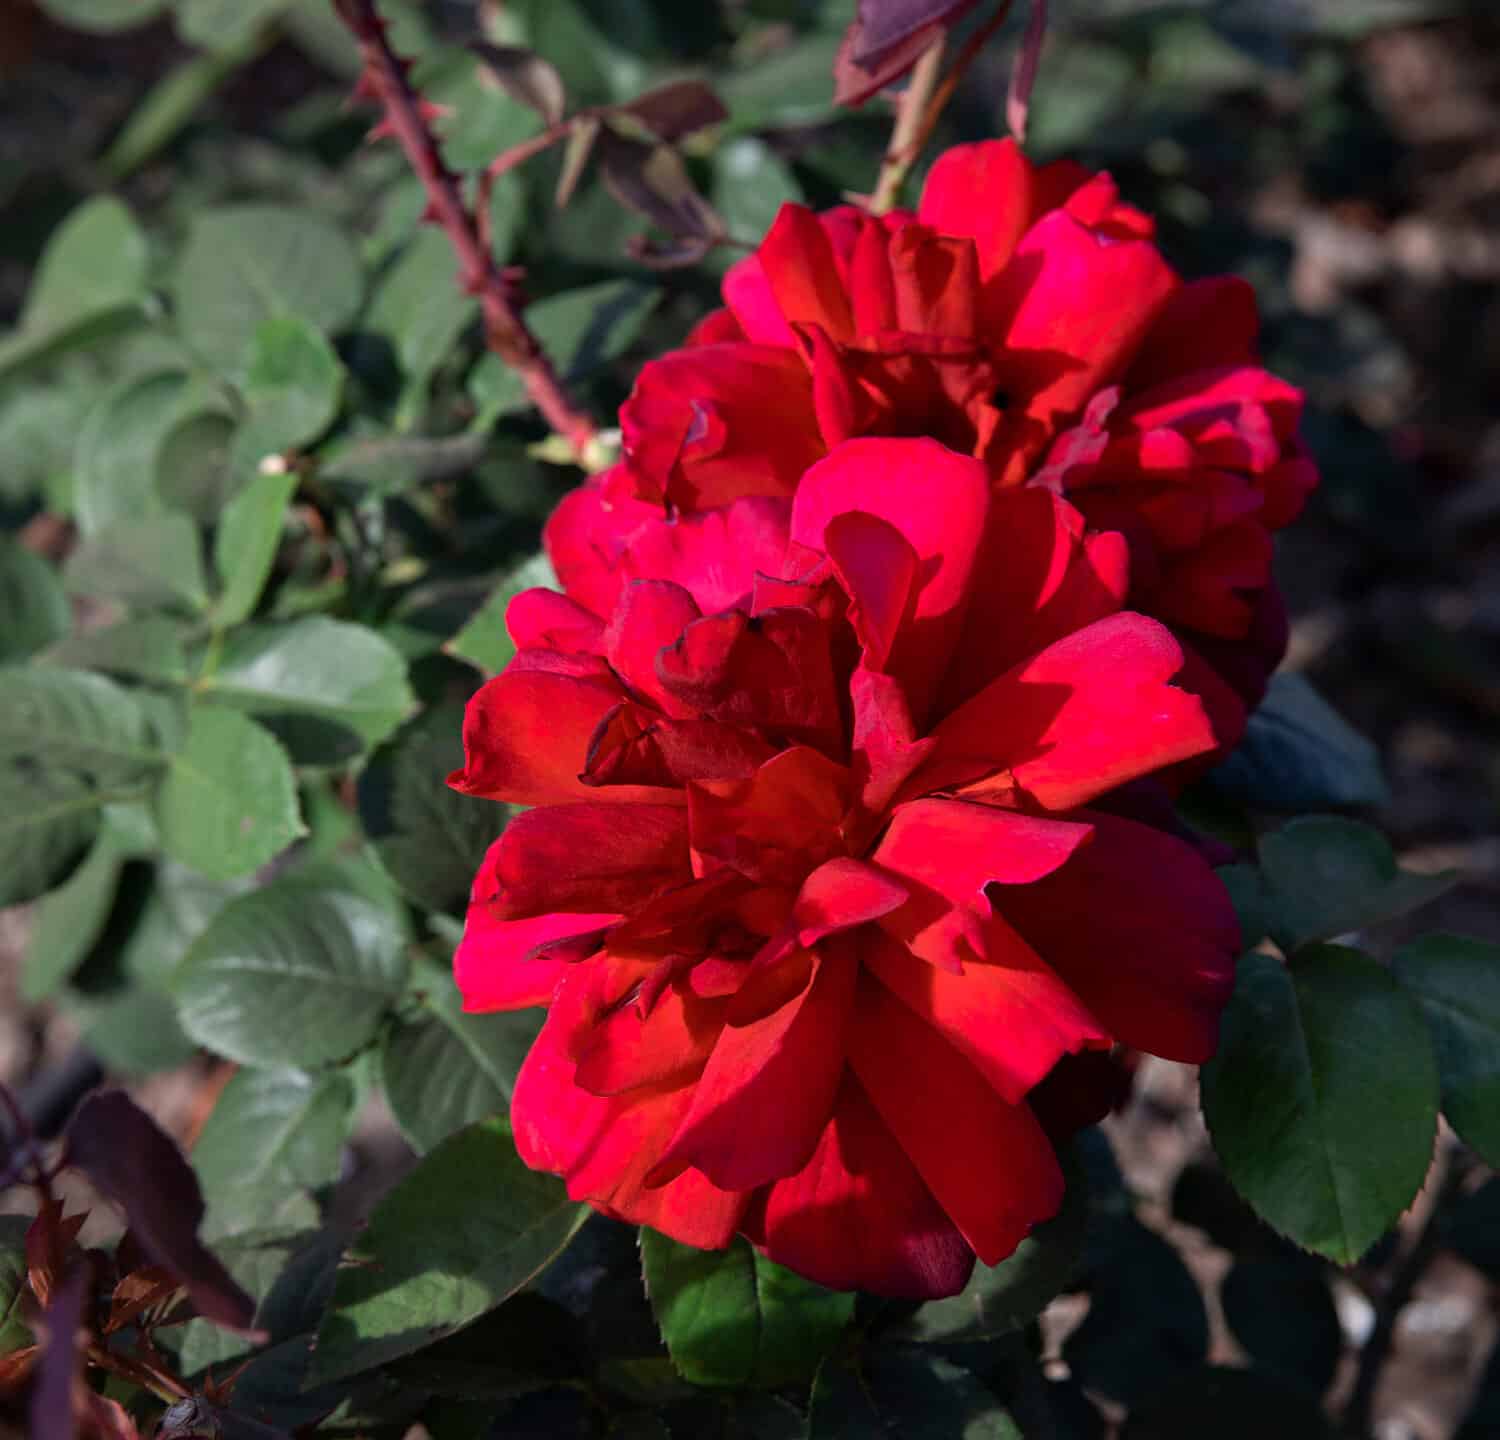 Belle rose.  Vista in primo piano dei fiori di Rosa Oklahoma di petali rossi, fioritura primaverile nel giardino.	